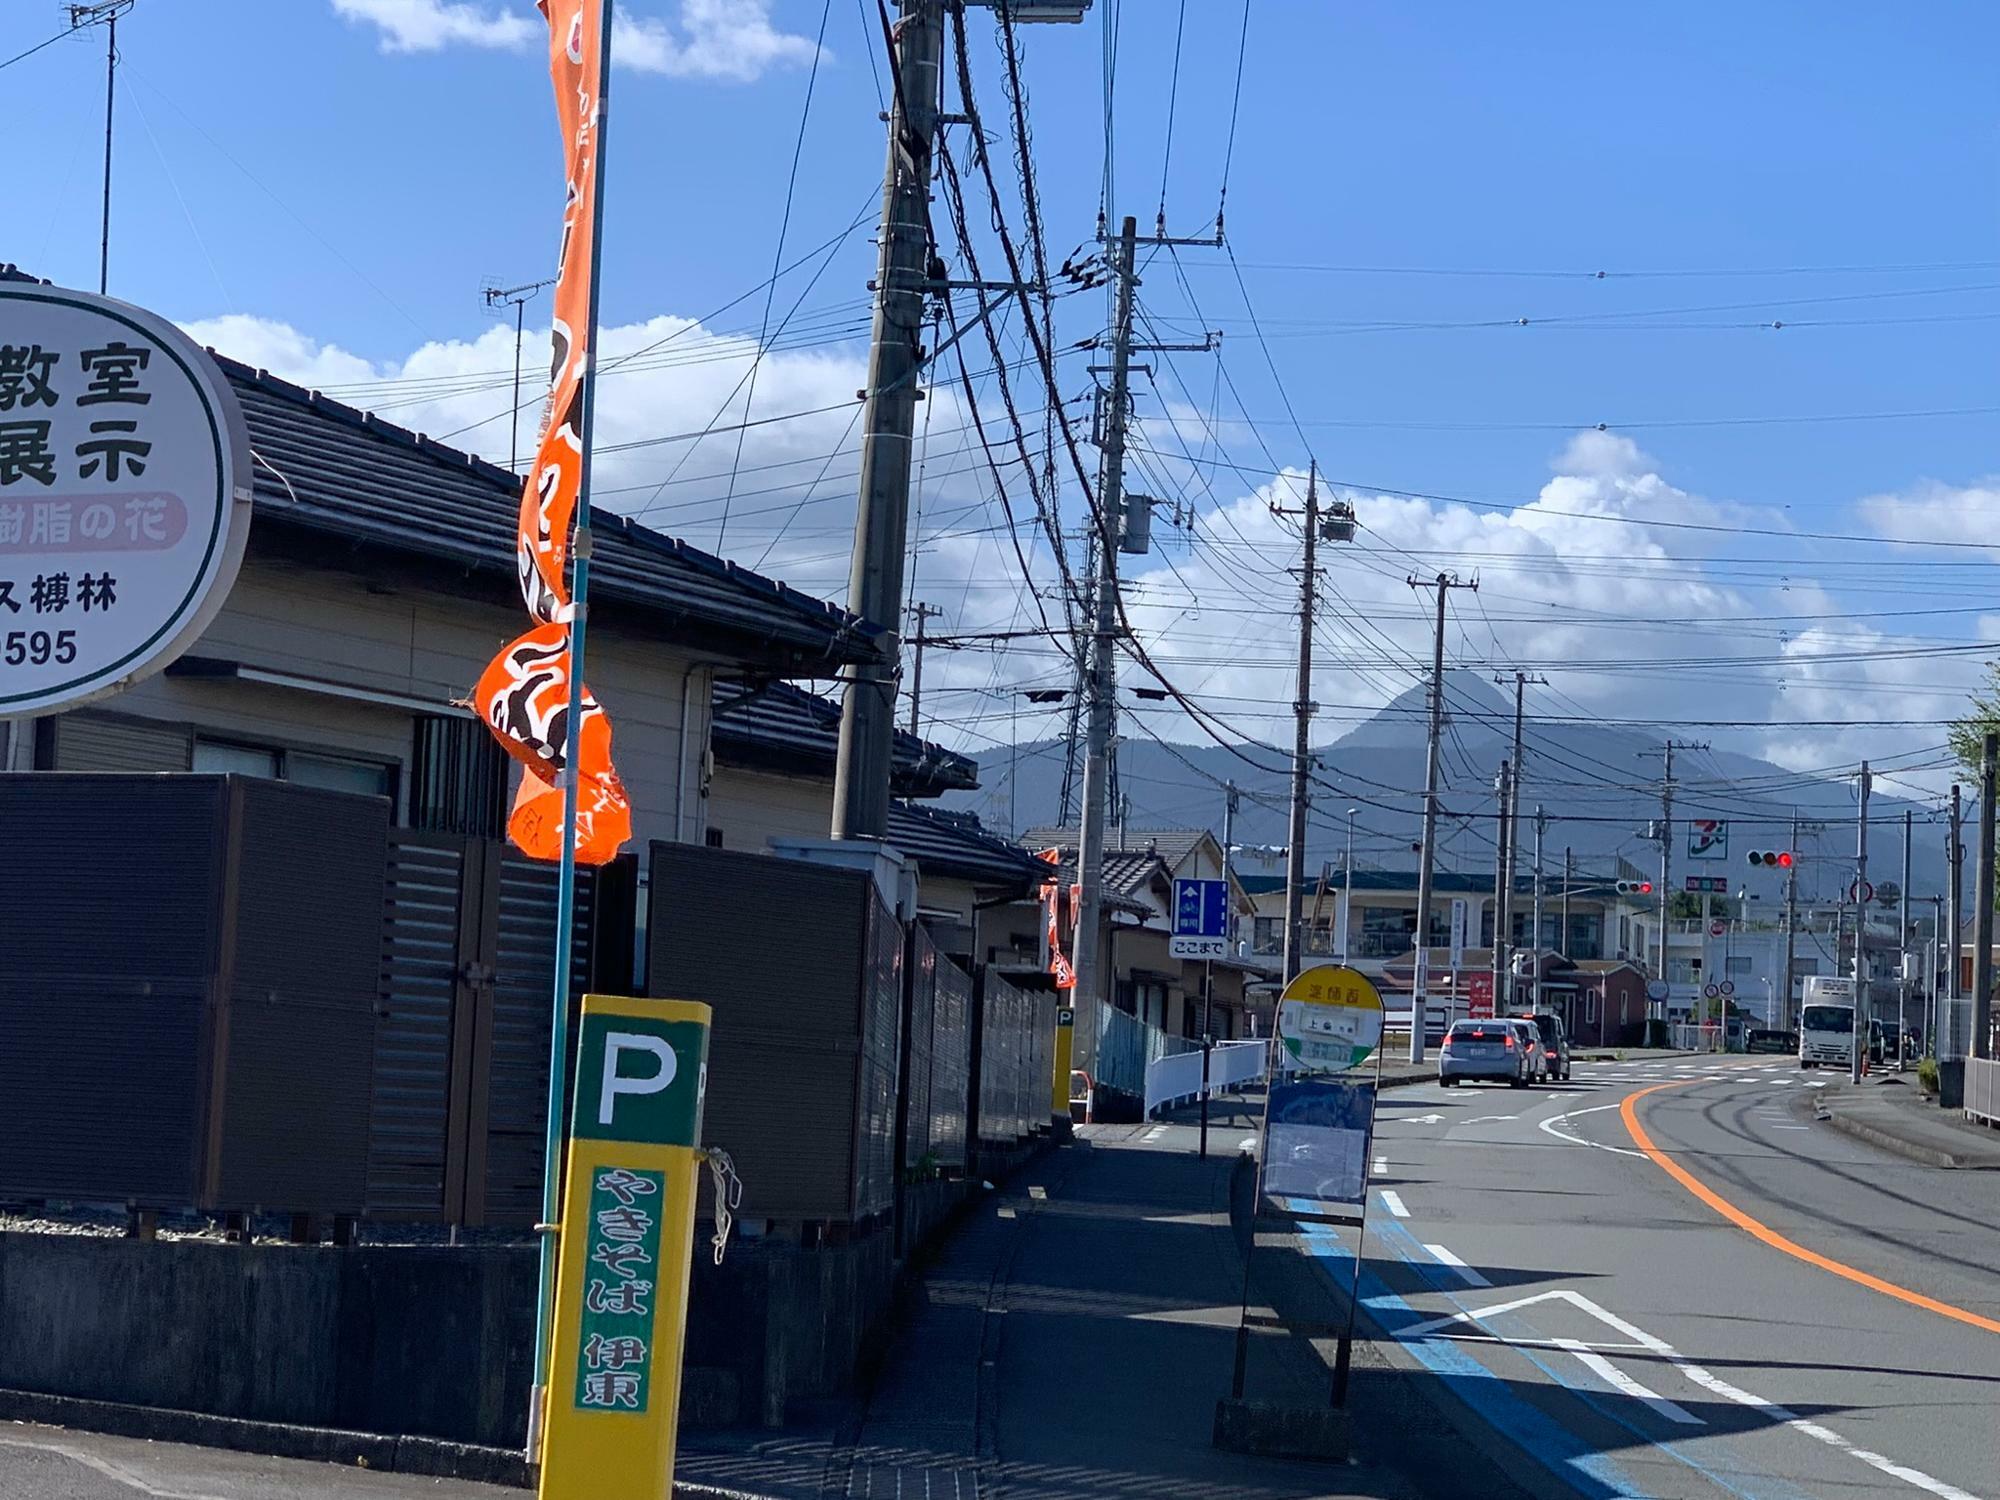 オレンジの富士宮焼きそばののぼりと黄色いポールが駐車場の目印